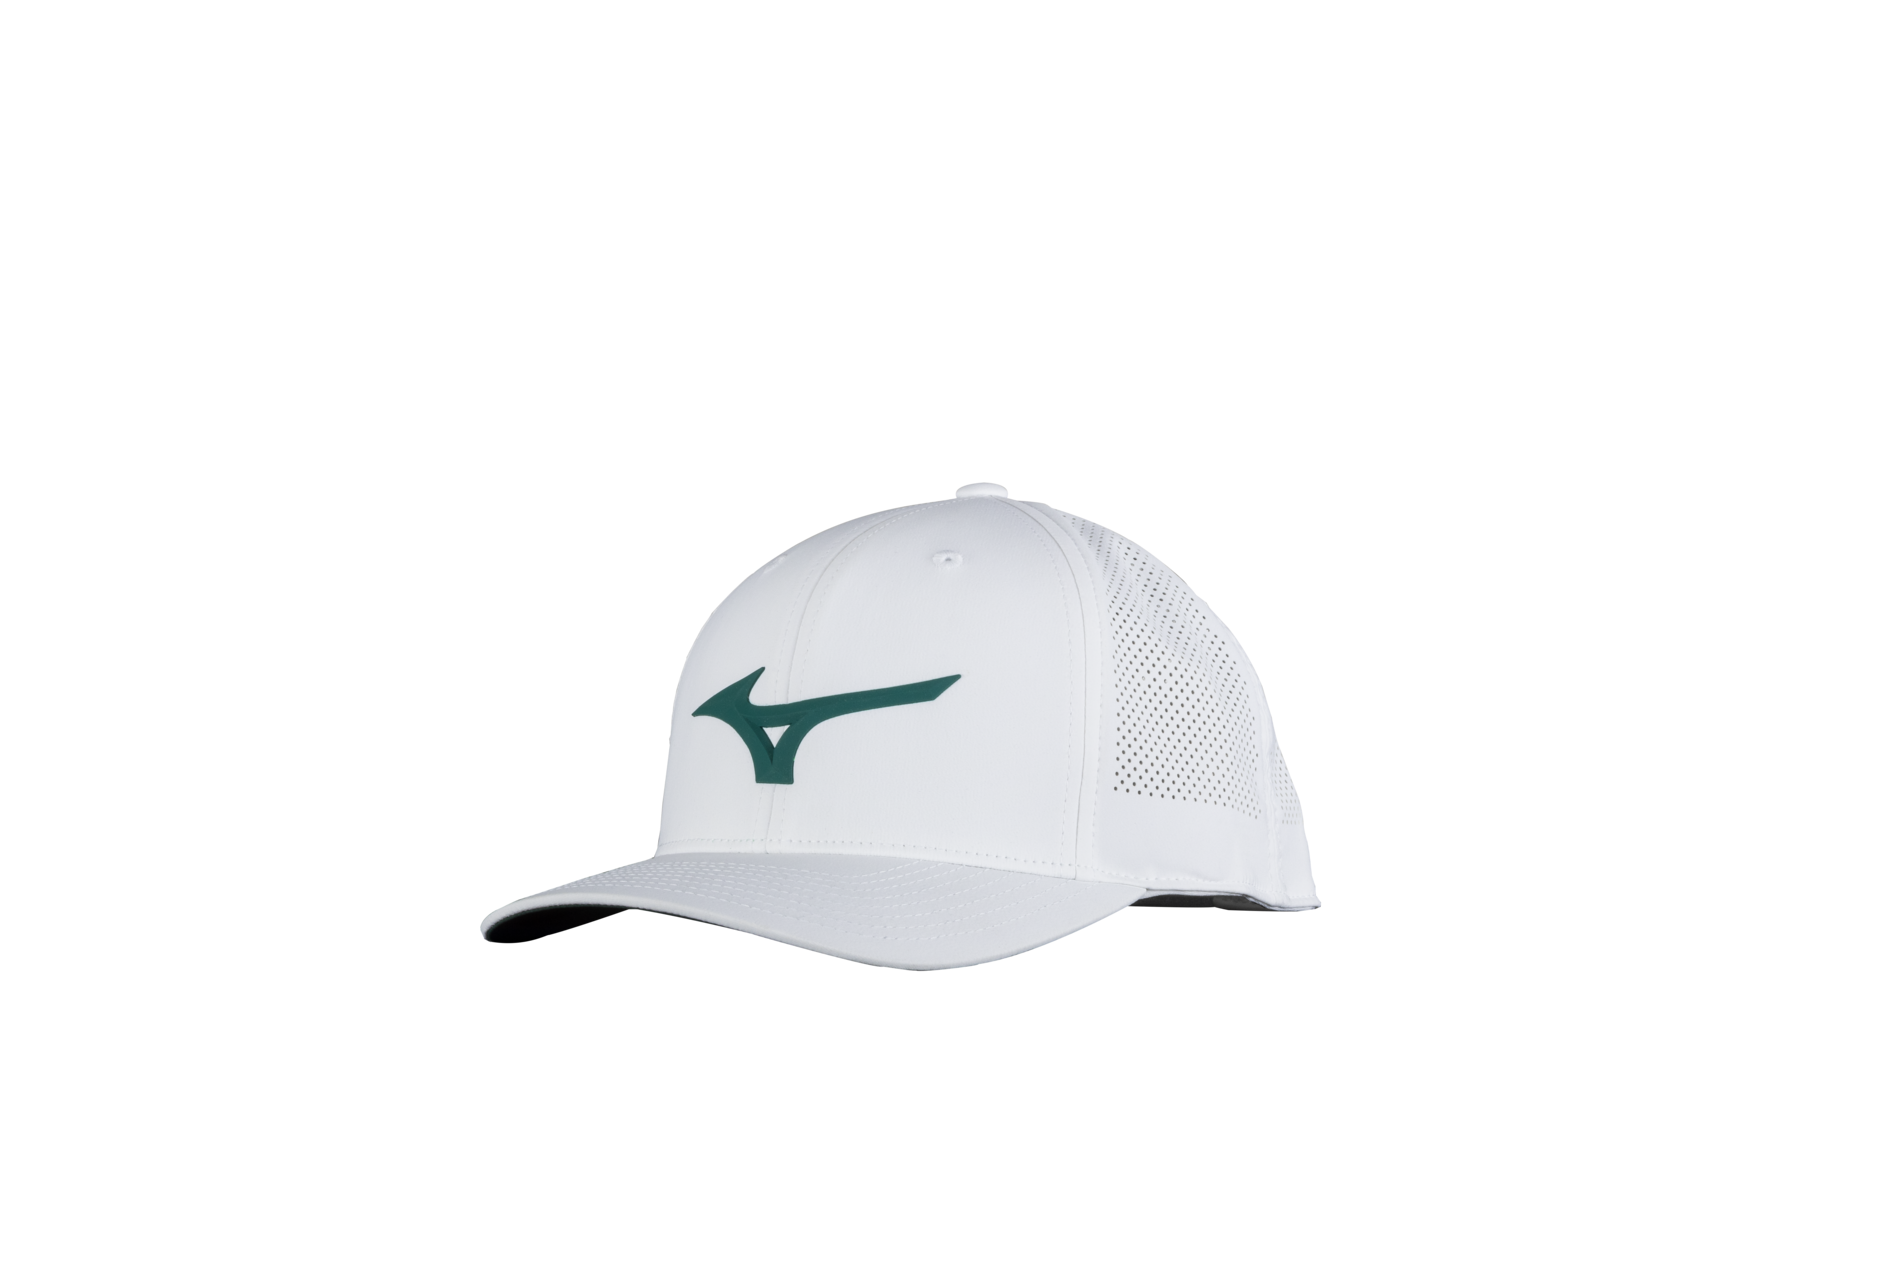 Mizuno Golf Bucket Hat - White / L/XL